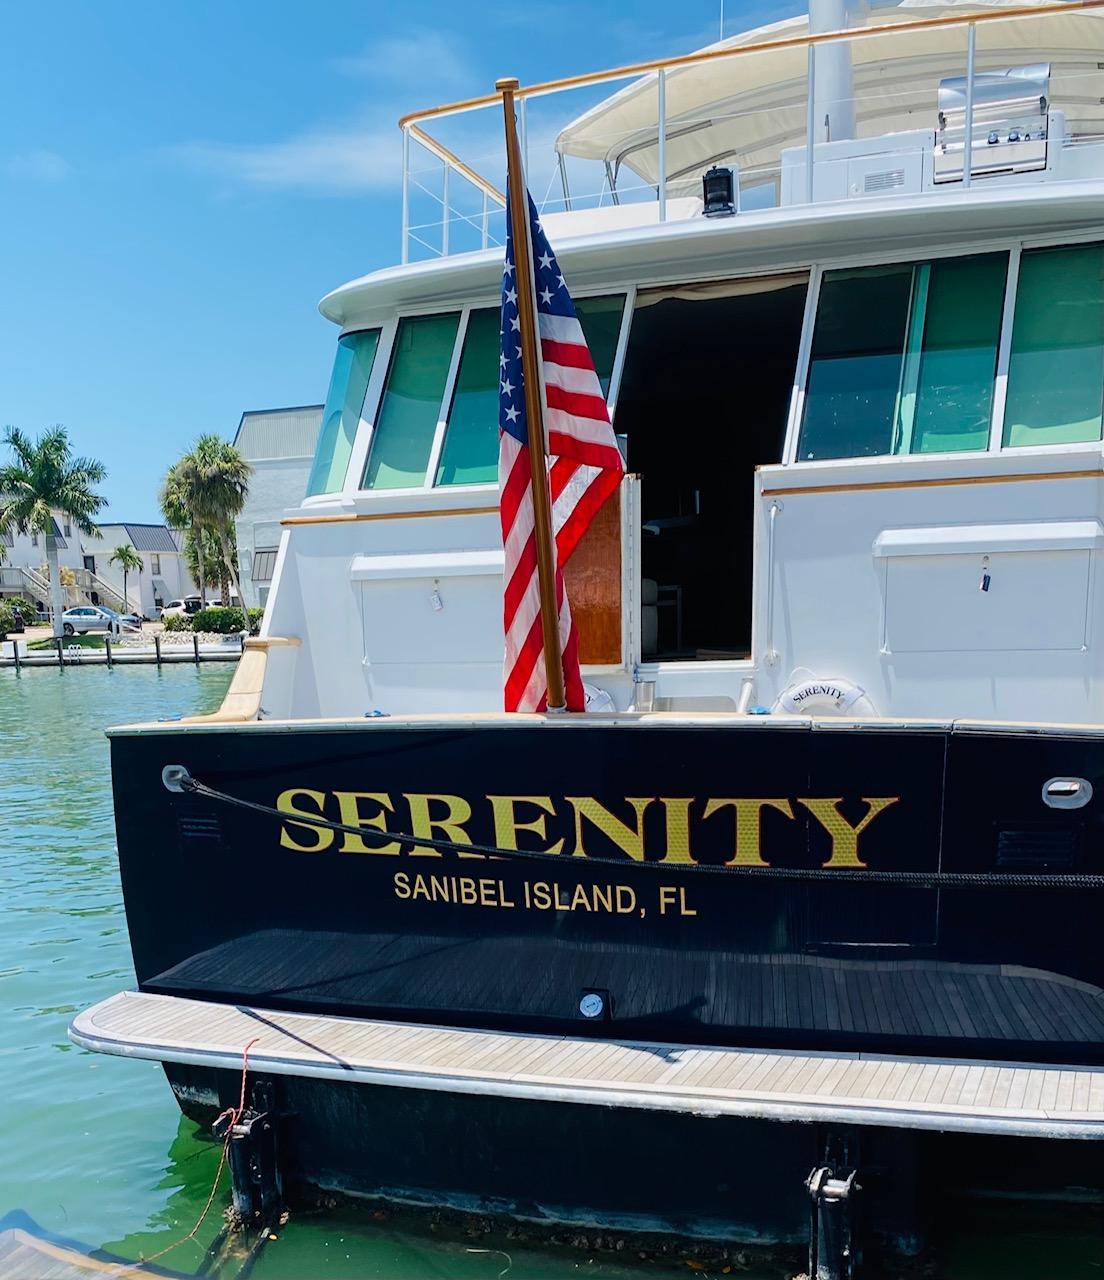 Serenity Yacht Photos Pics 